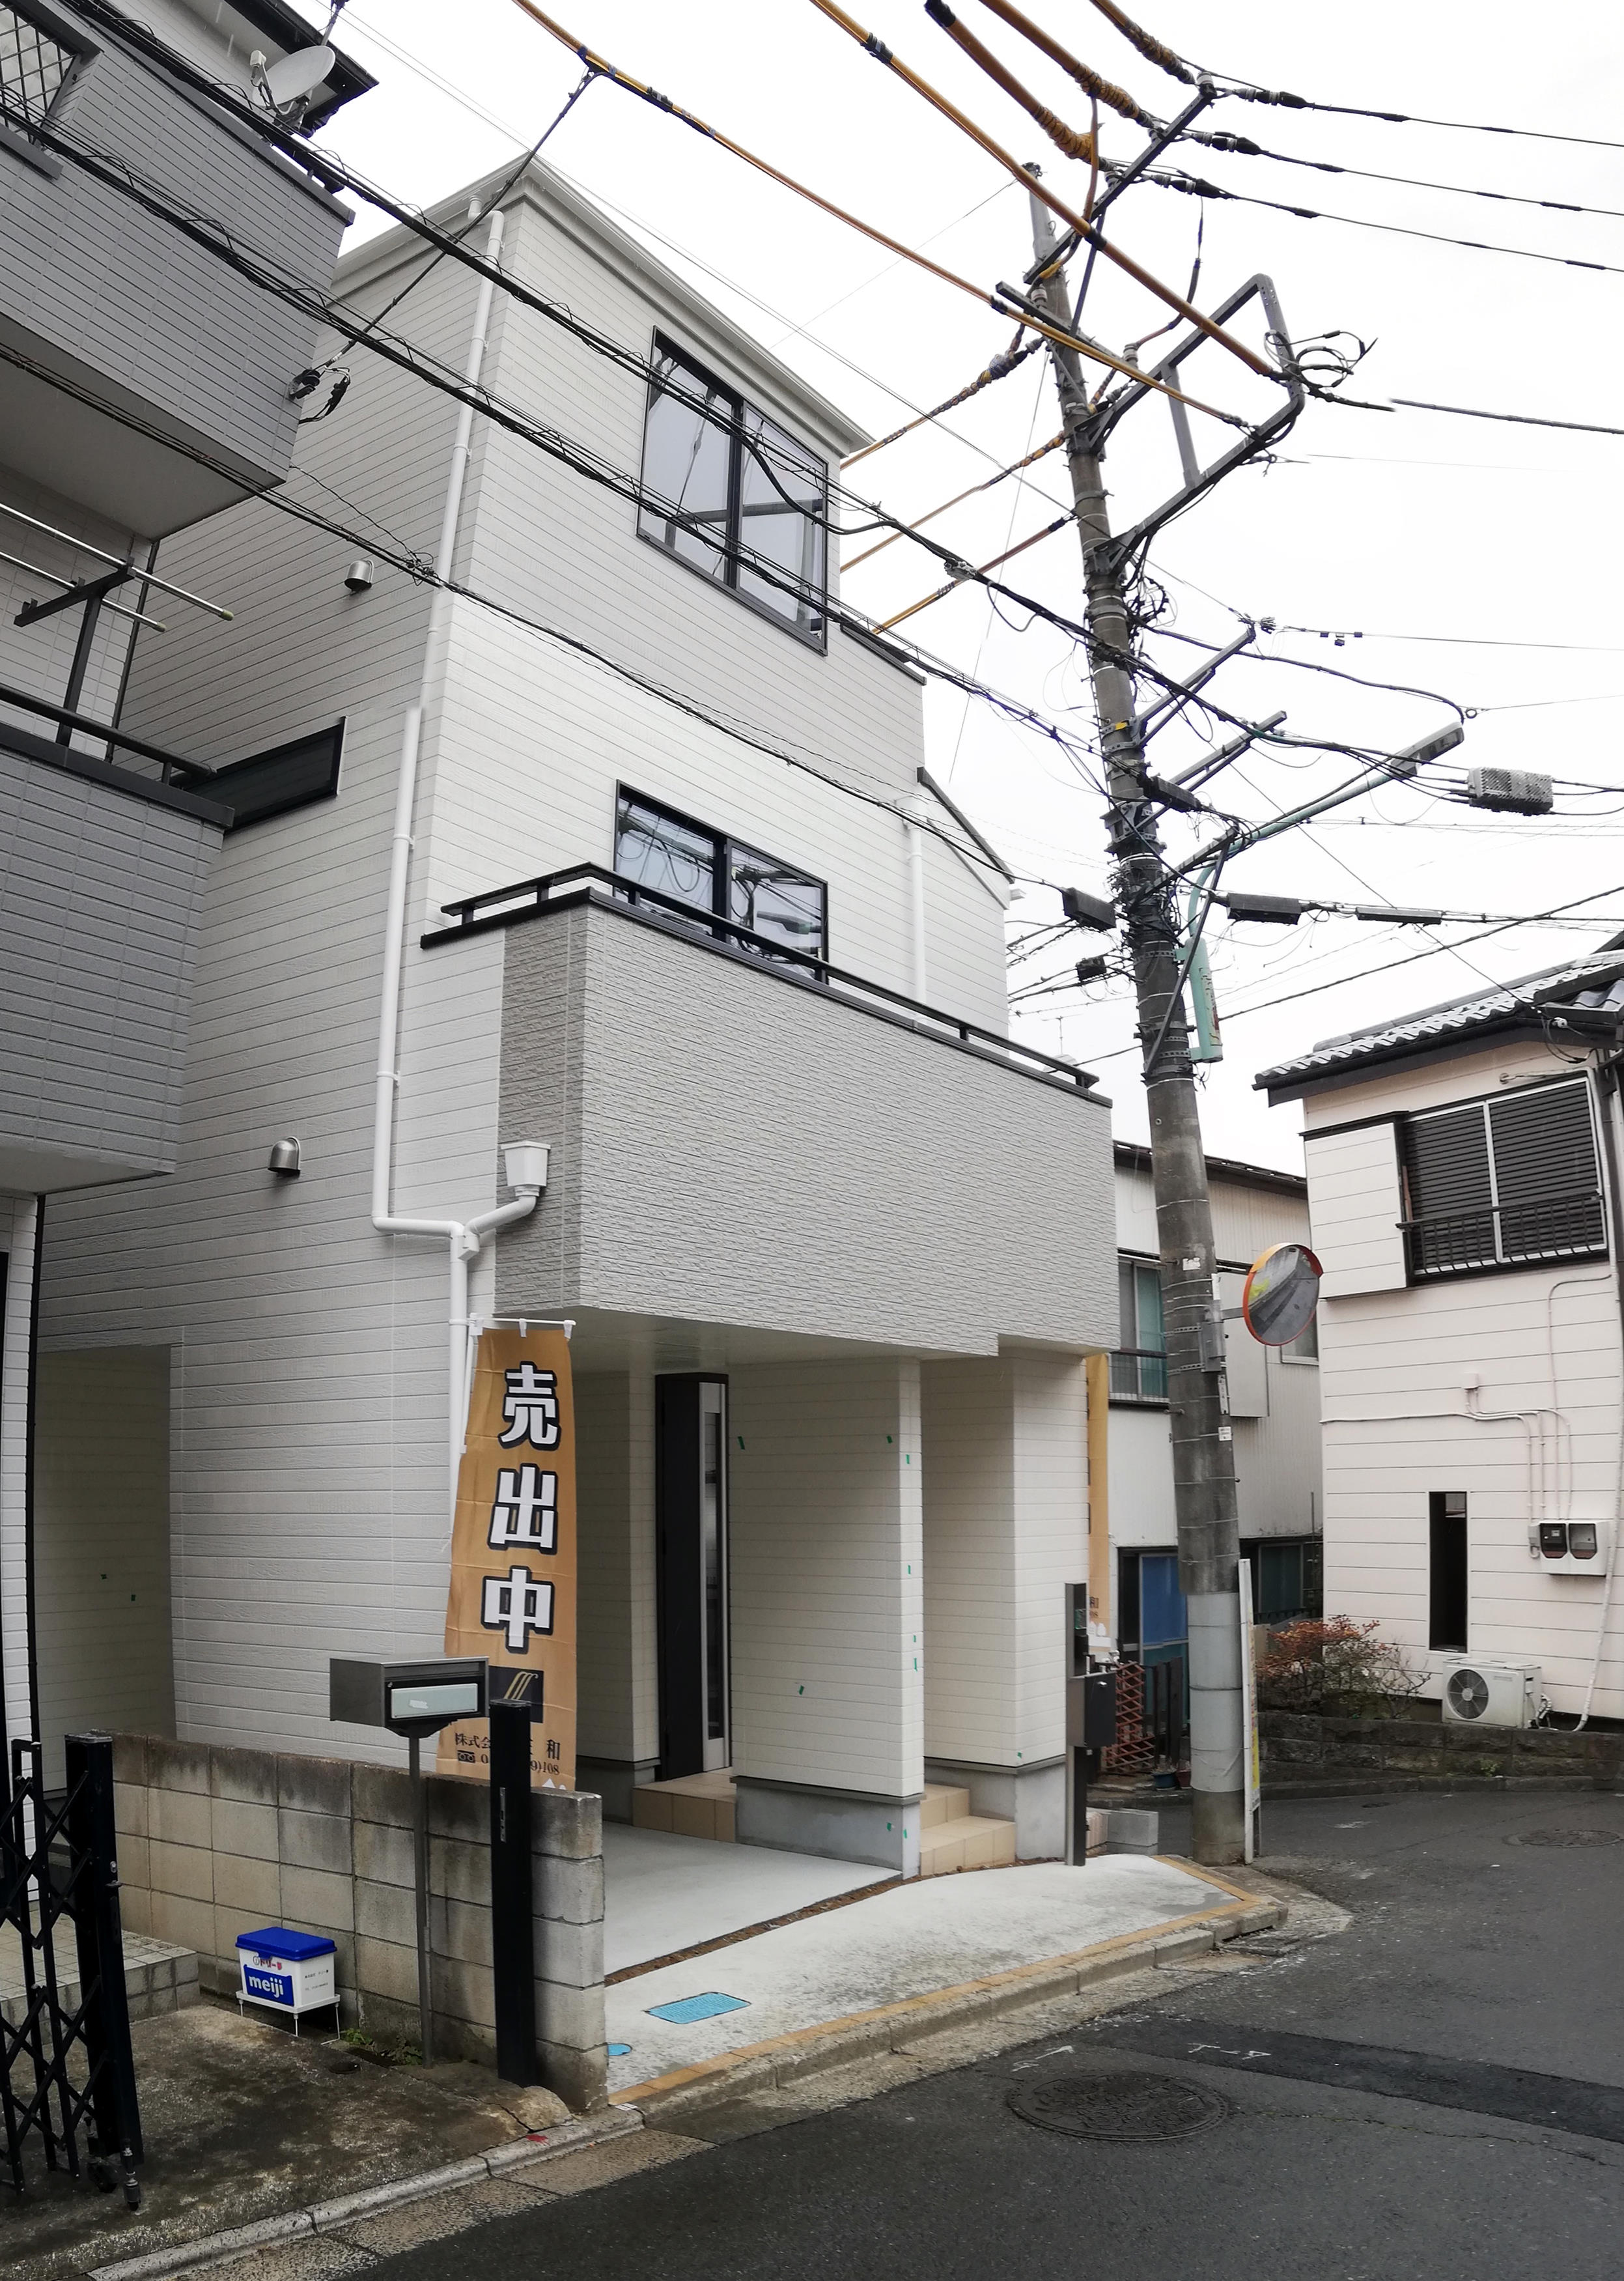 住宅性能評価6項目の最高等級取得！！信頼のある物件です！飯田の家の売りは地震に強いこと。耐震性能で最高等級を取得しているので地震大日本でも安心安全な生活を！